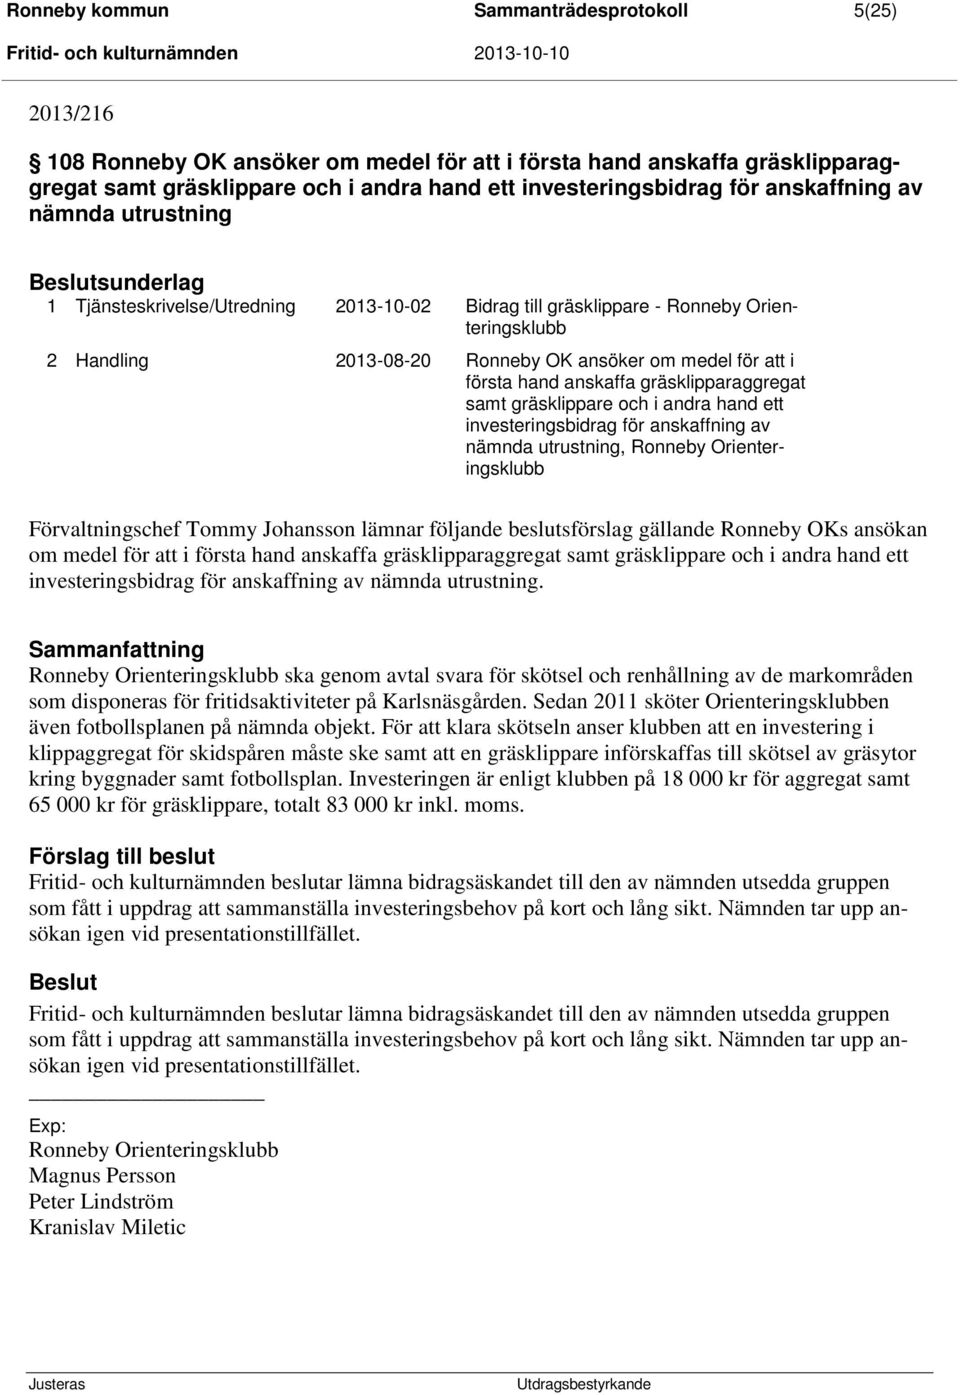 2013-08-20 Ronneby OK ansöker om medel för att i första hand anskaffa gräsklipparaggregat samt gräsklippare och i andra hand ett investeringsbidrag för anskaffning av nämnda utrustning, Ronneby